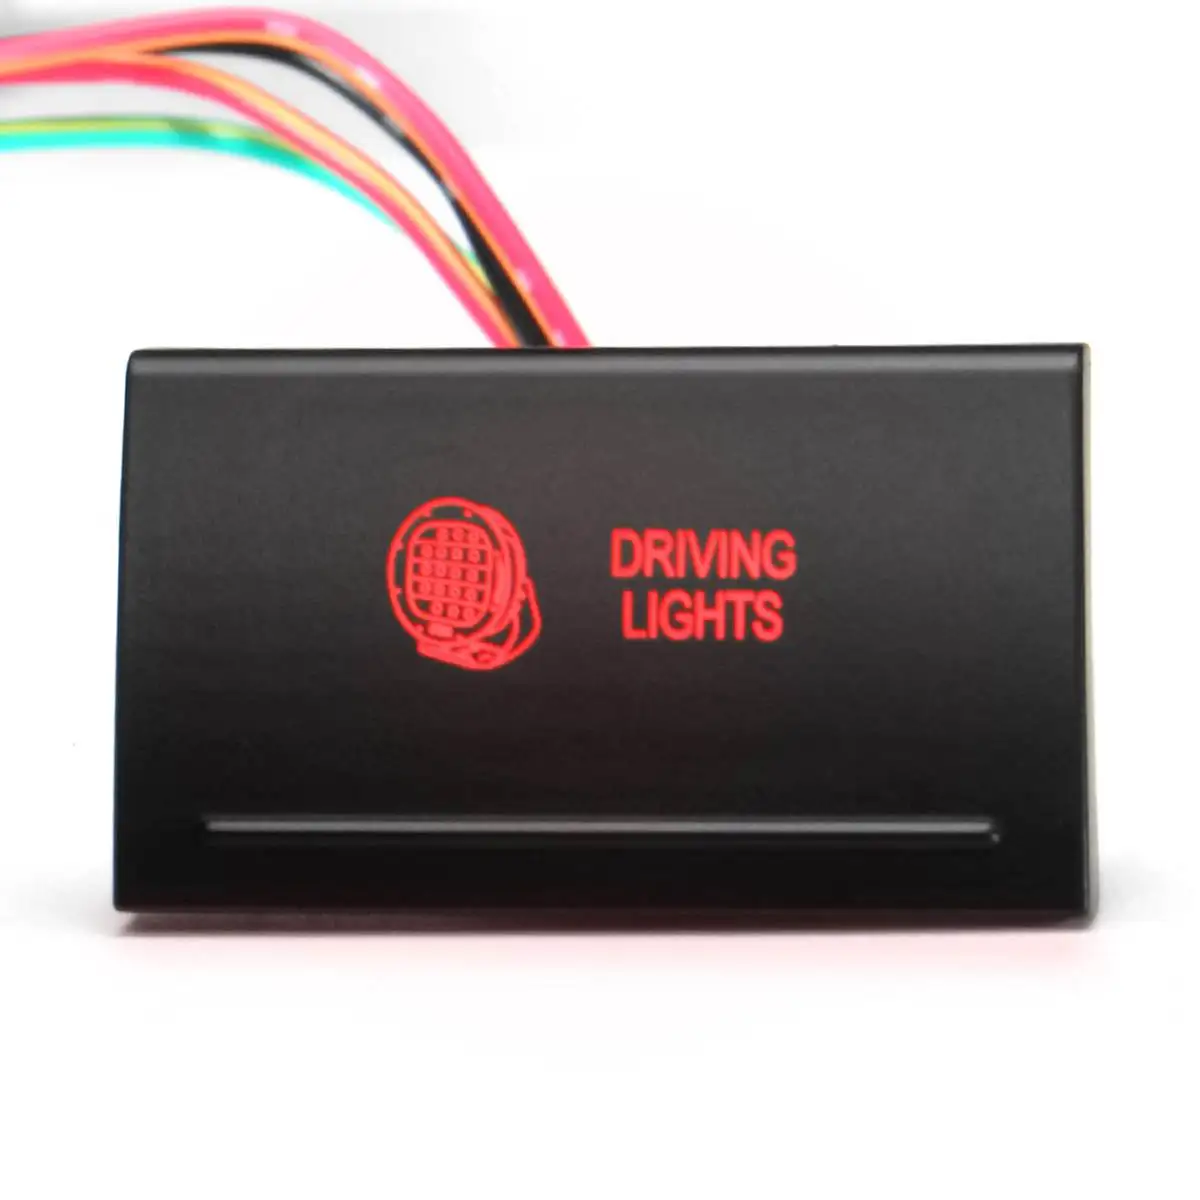 1 шт. пластиковый 12 В 3 А однополюсный кнопочный переключатель для Amarok A107R светодиодный светильник для вождения светодиодный переключатель Янтарный/красный - Цвет: E